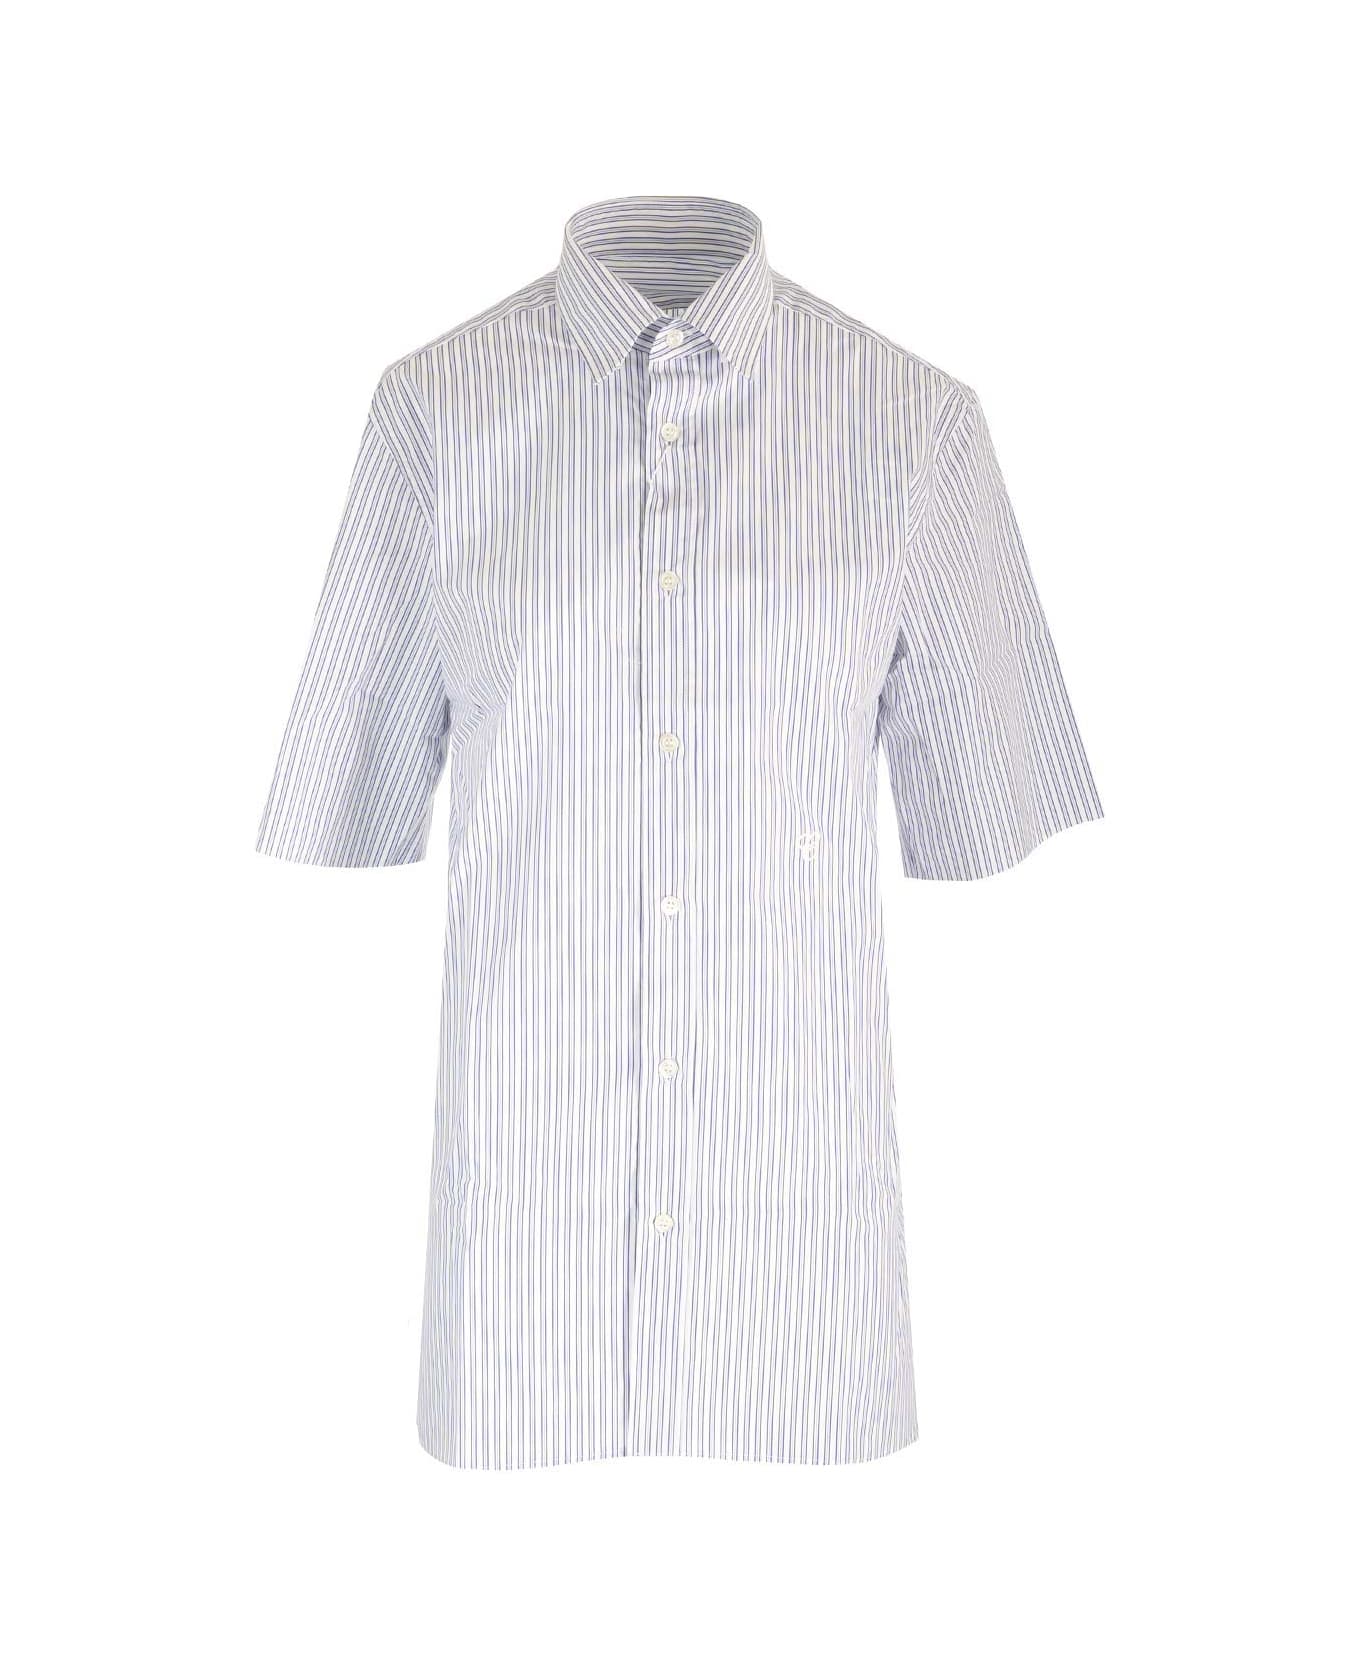 Maison Margiela Striped Shirt - BLUE WHITE STRIPES